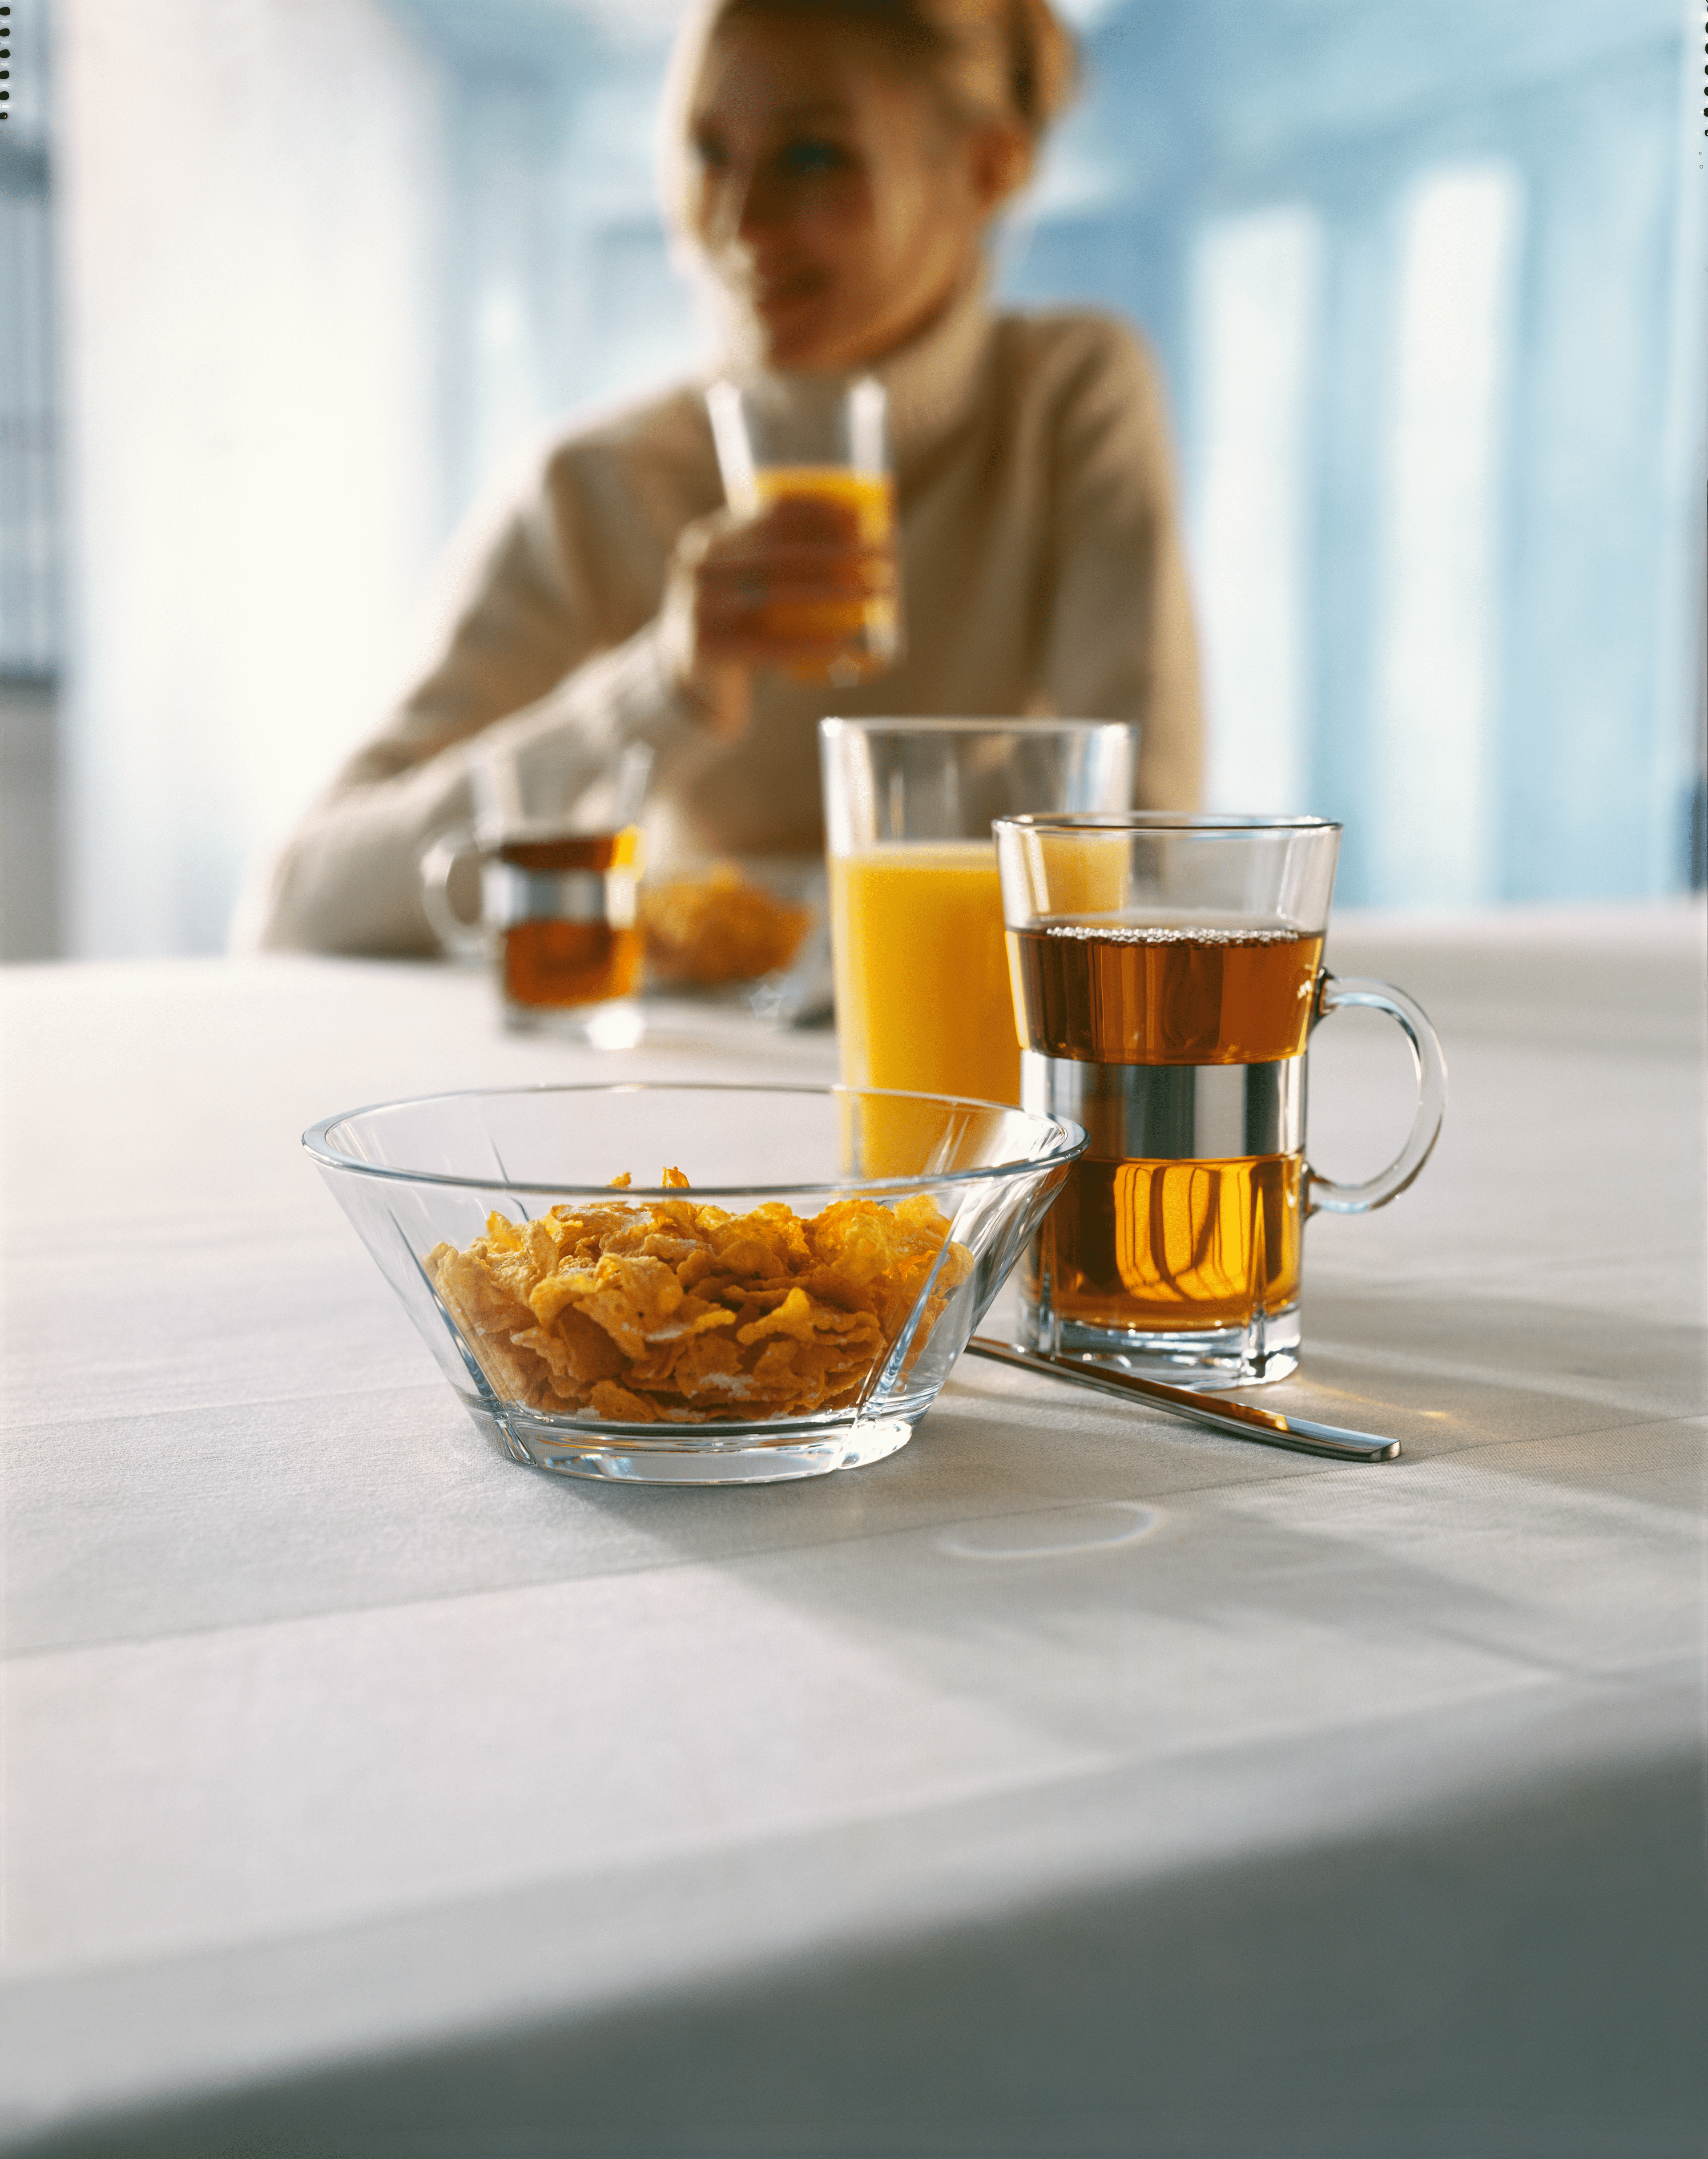 Morgenmadssæt 2 pers.: Hot drink og skål